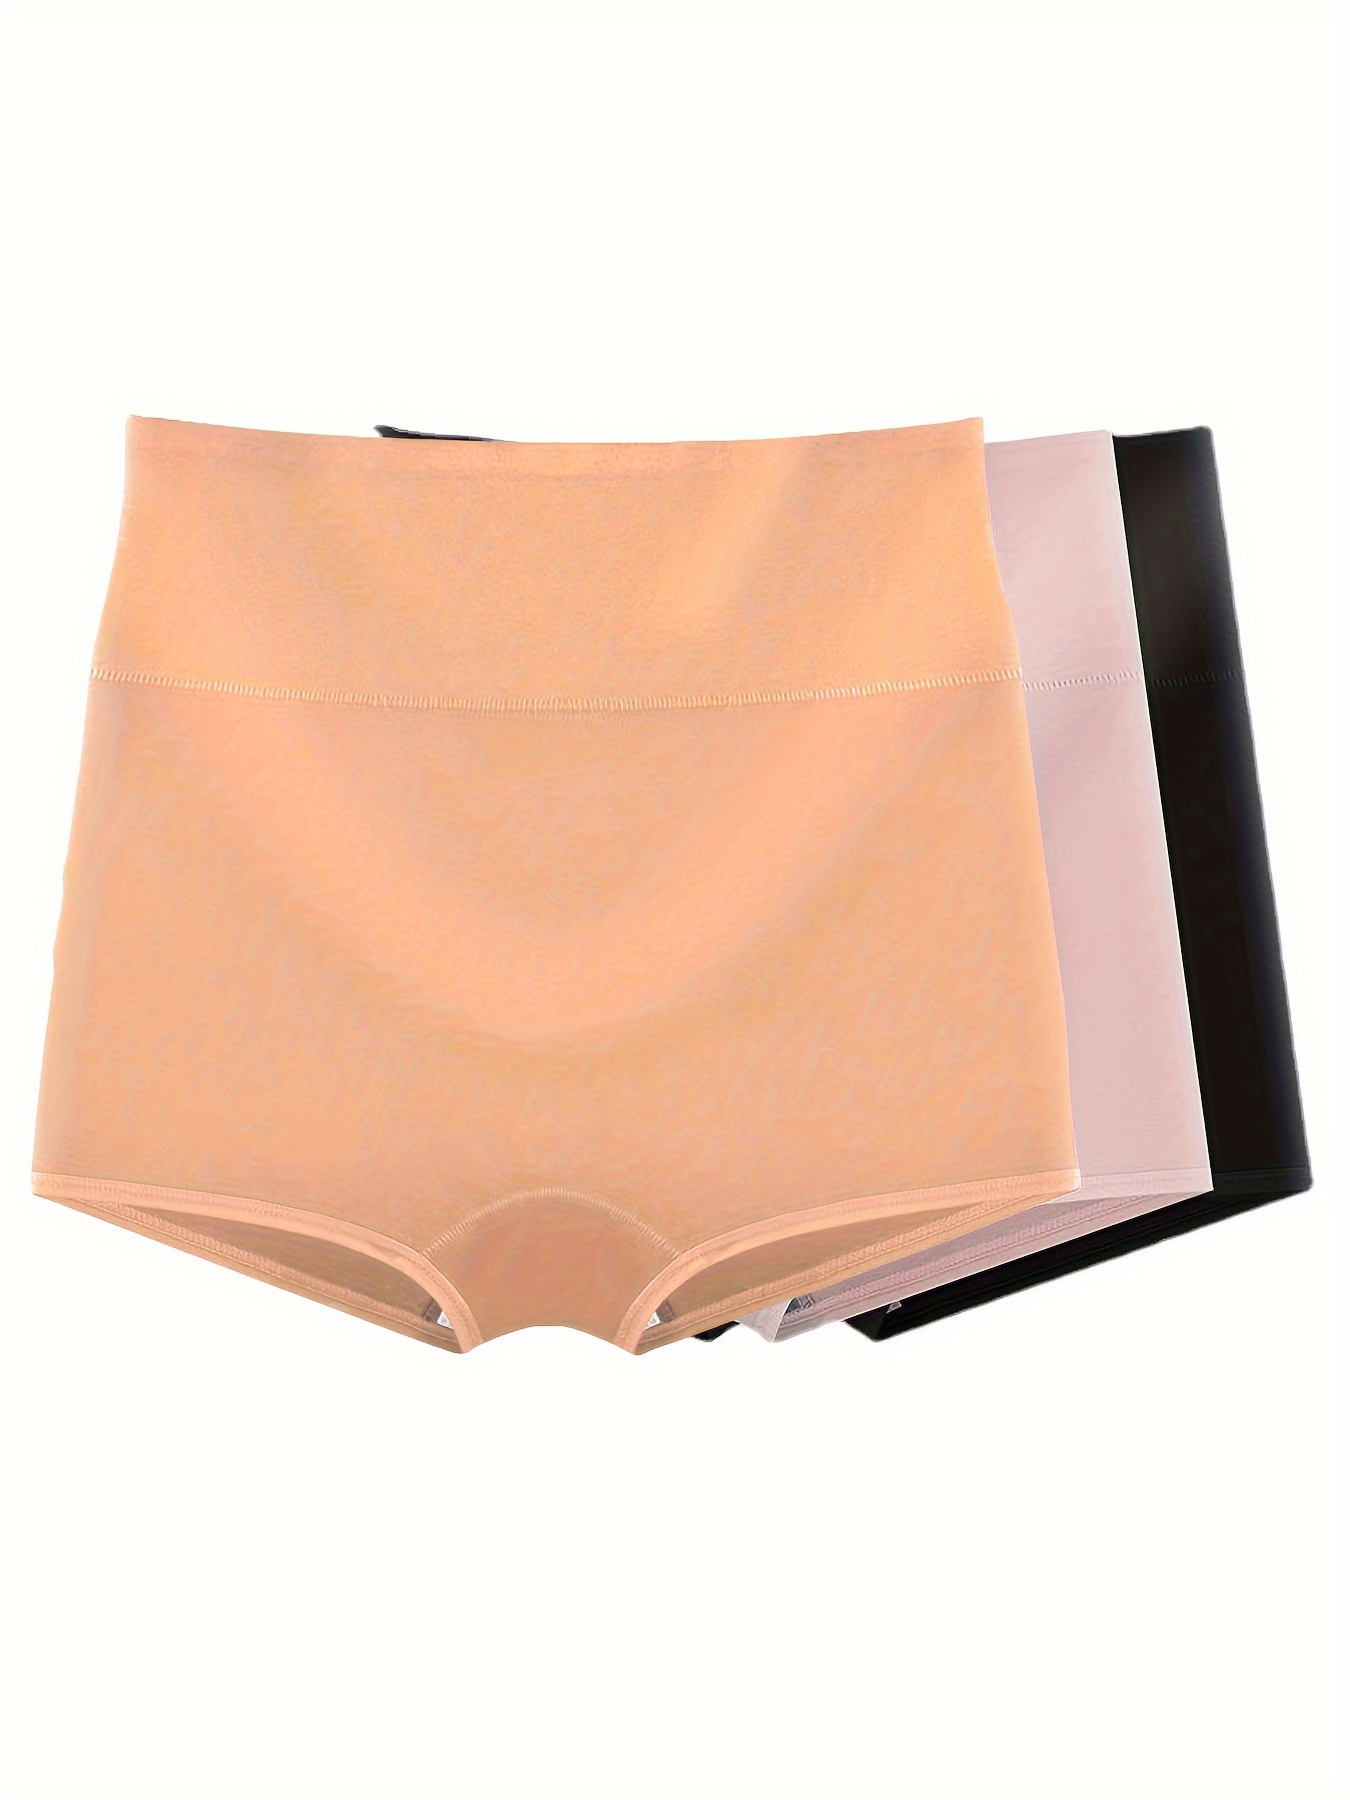 HUPOM Boyshort Underwear For Women Womens Underwear High Waist Casual Tie  Seamless Waistband Beige M